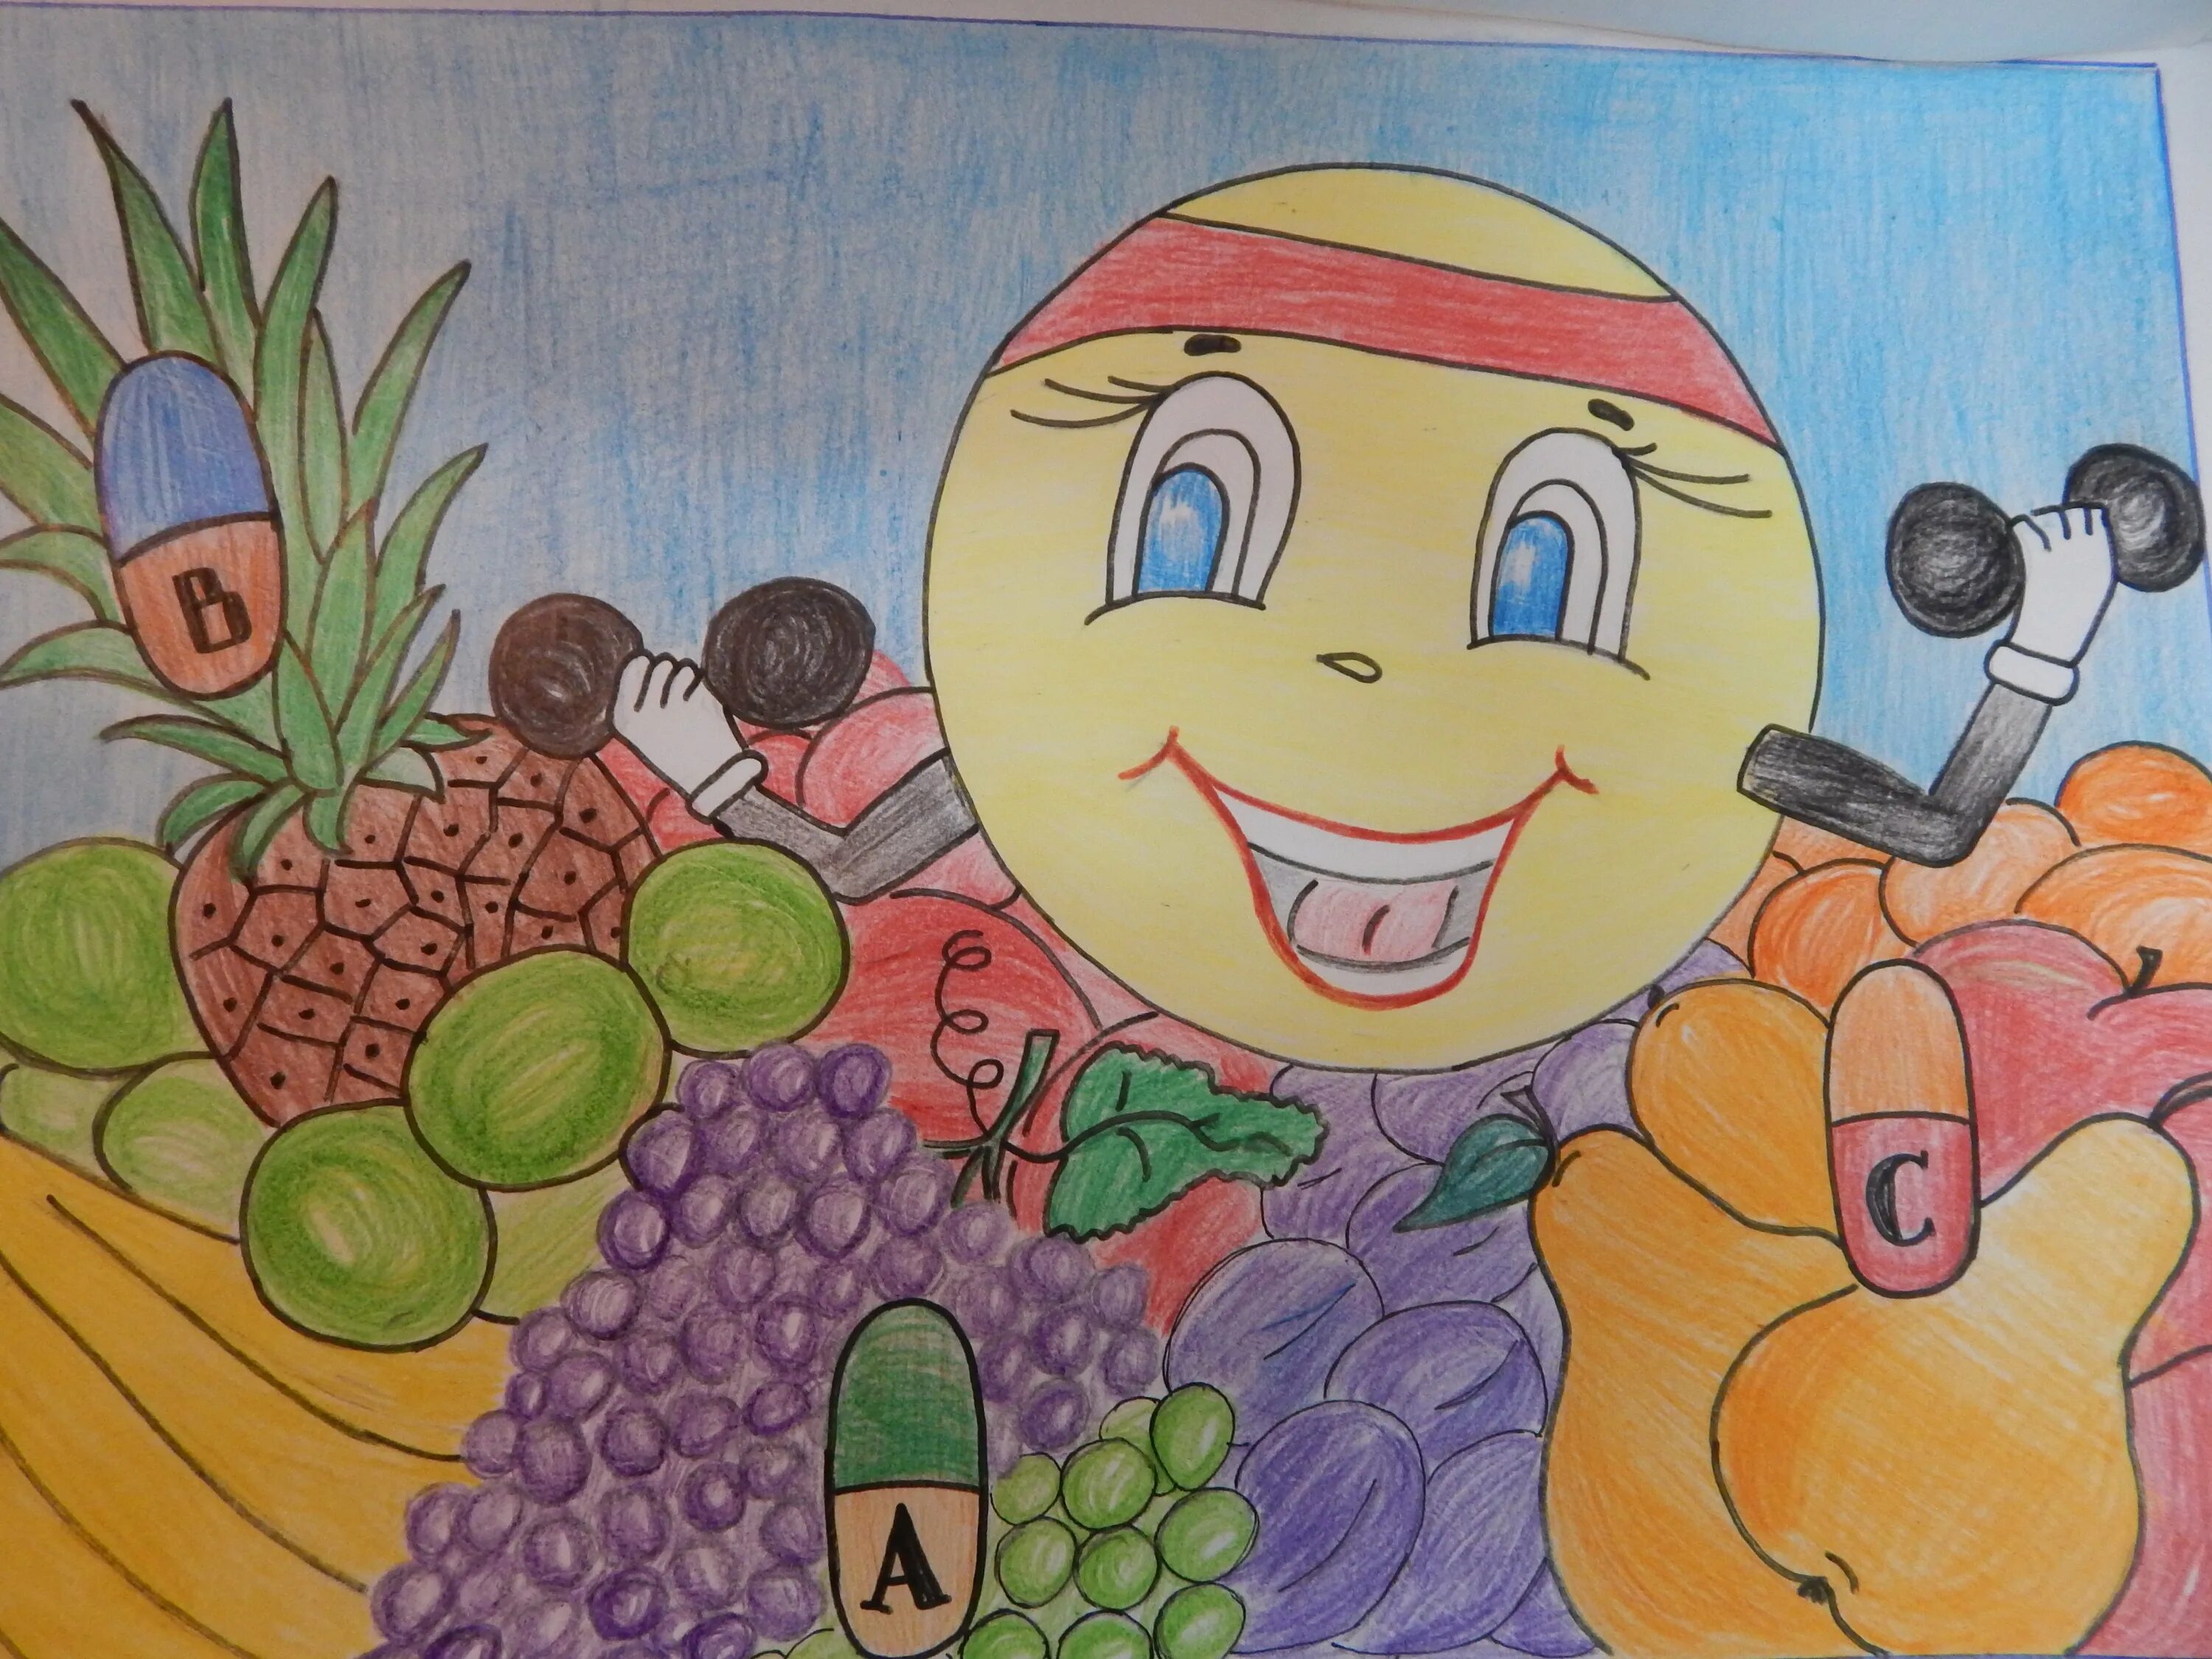 Тема здоровый образ жизни рисунок 2 класс. Здоровое питание рисунок. Рисунок на тему здоровое питание. Здоровый образ жизни рисунок. Детские рисунки на тему здоровое питание.